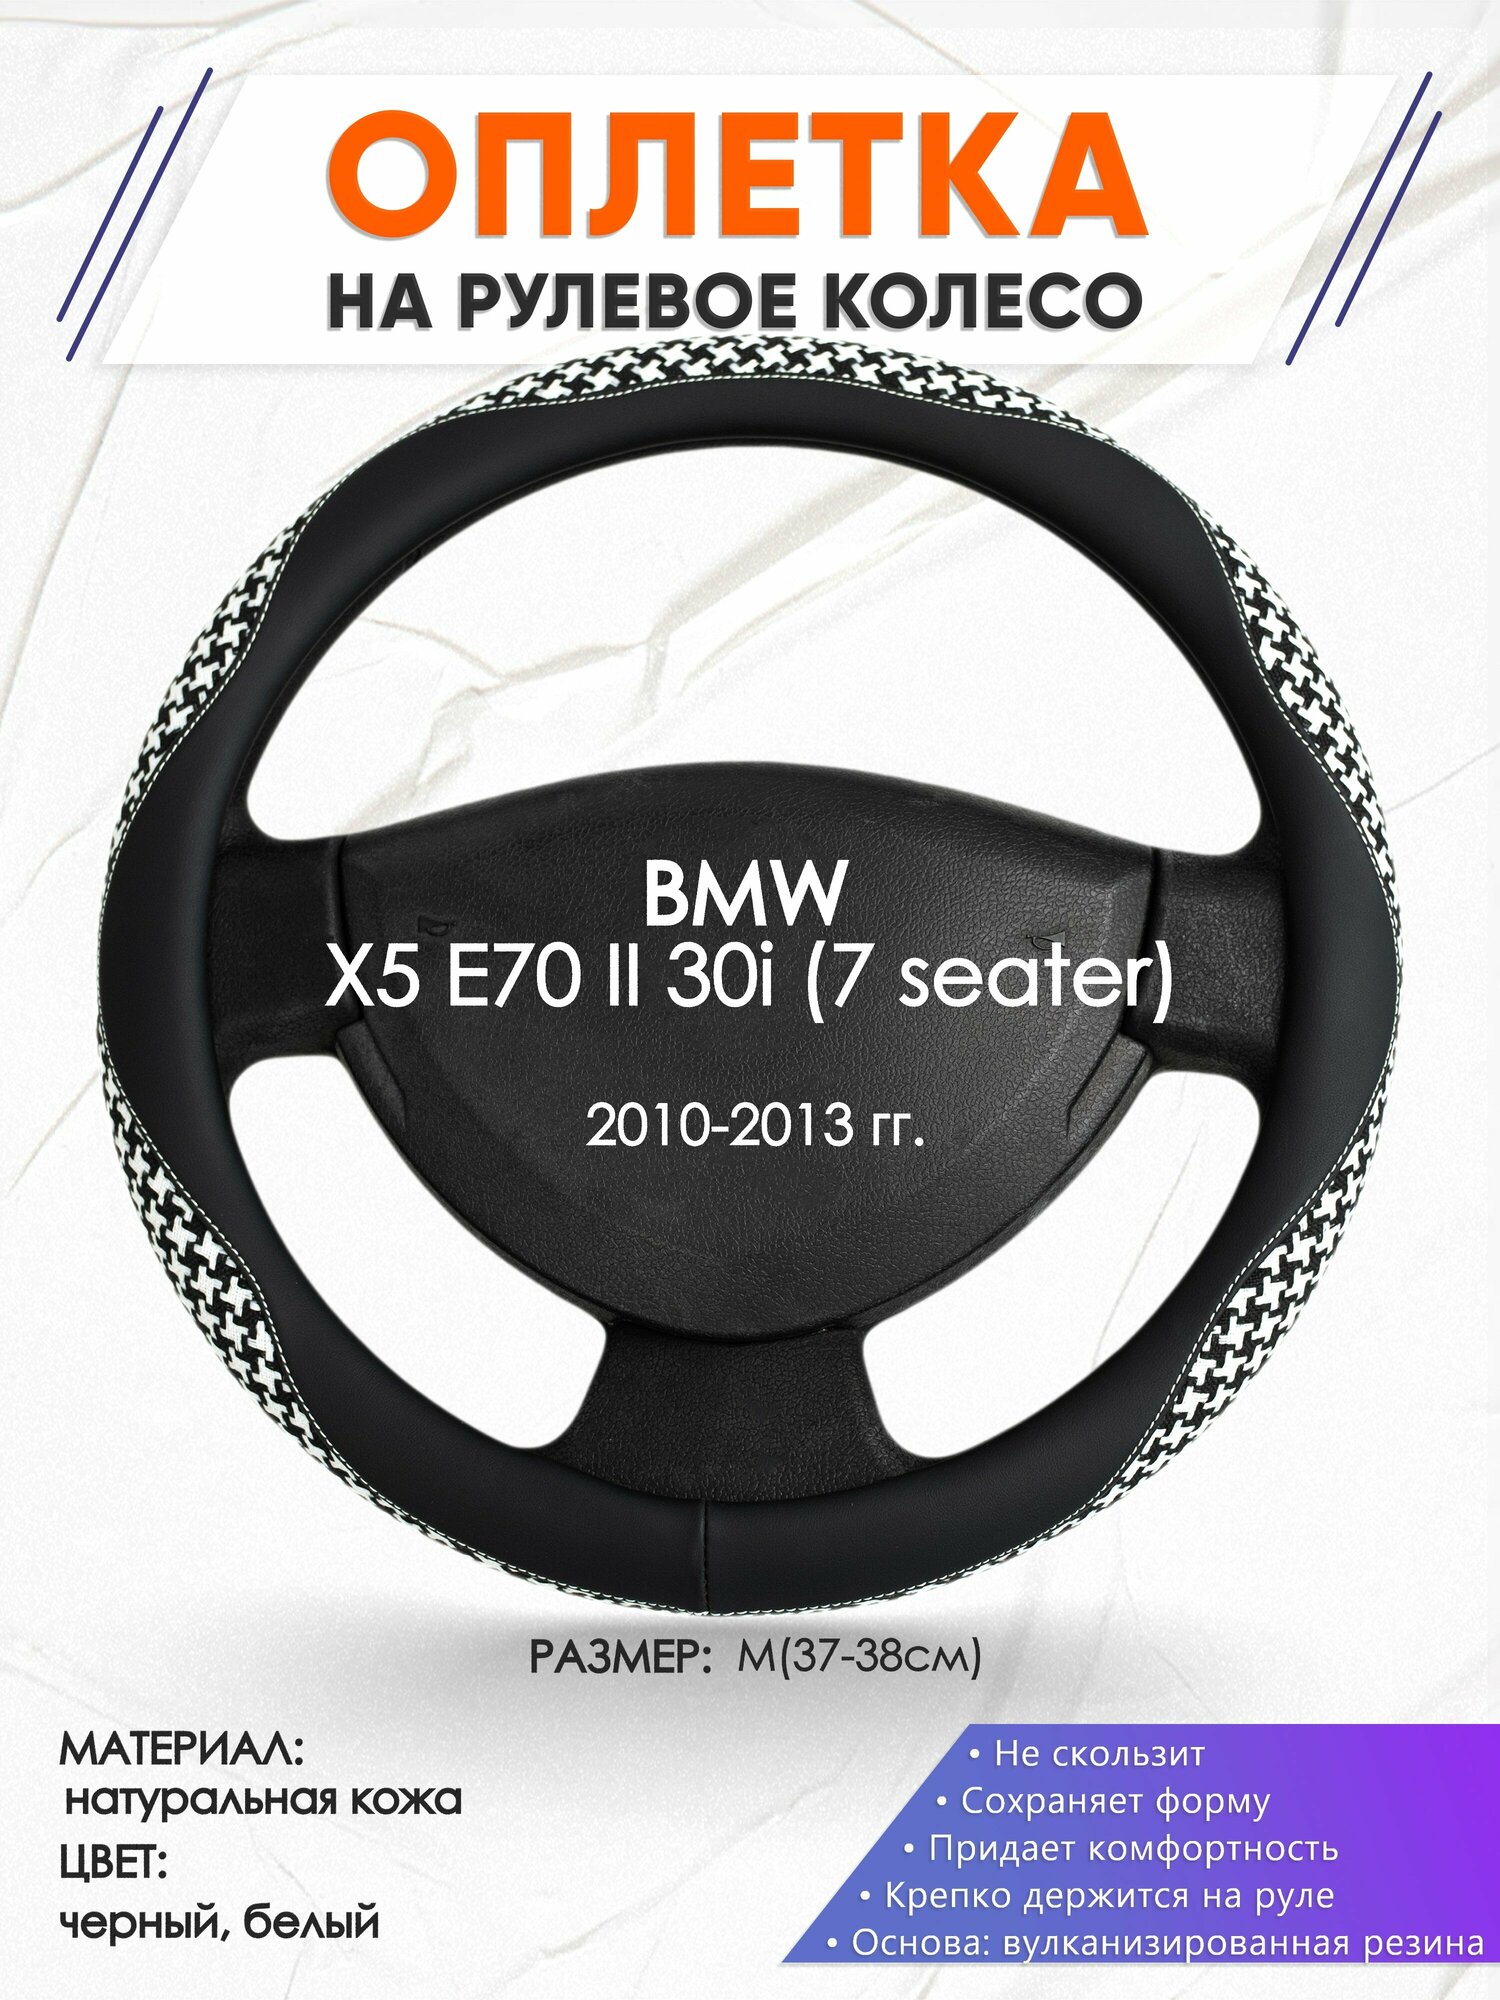 Оплетка наруль для BMW X5 E70 II 30i (7 seater)(Бмв икс 5 е70) 2010-2013 годов выпуска, размер M(37-38см), Натуральная кожа 21